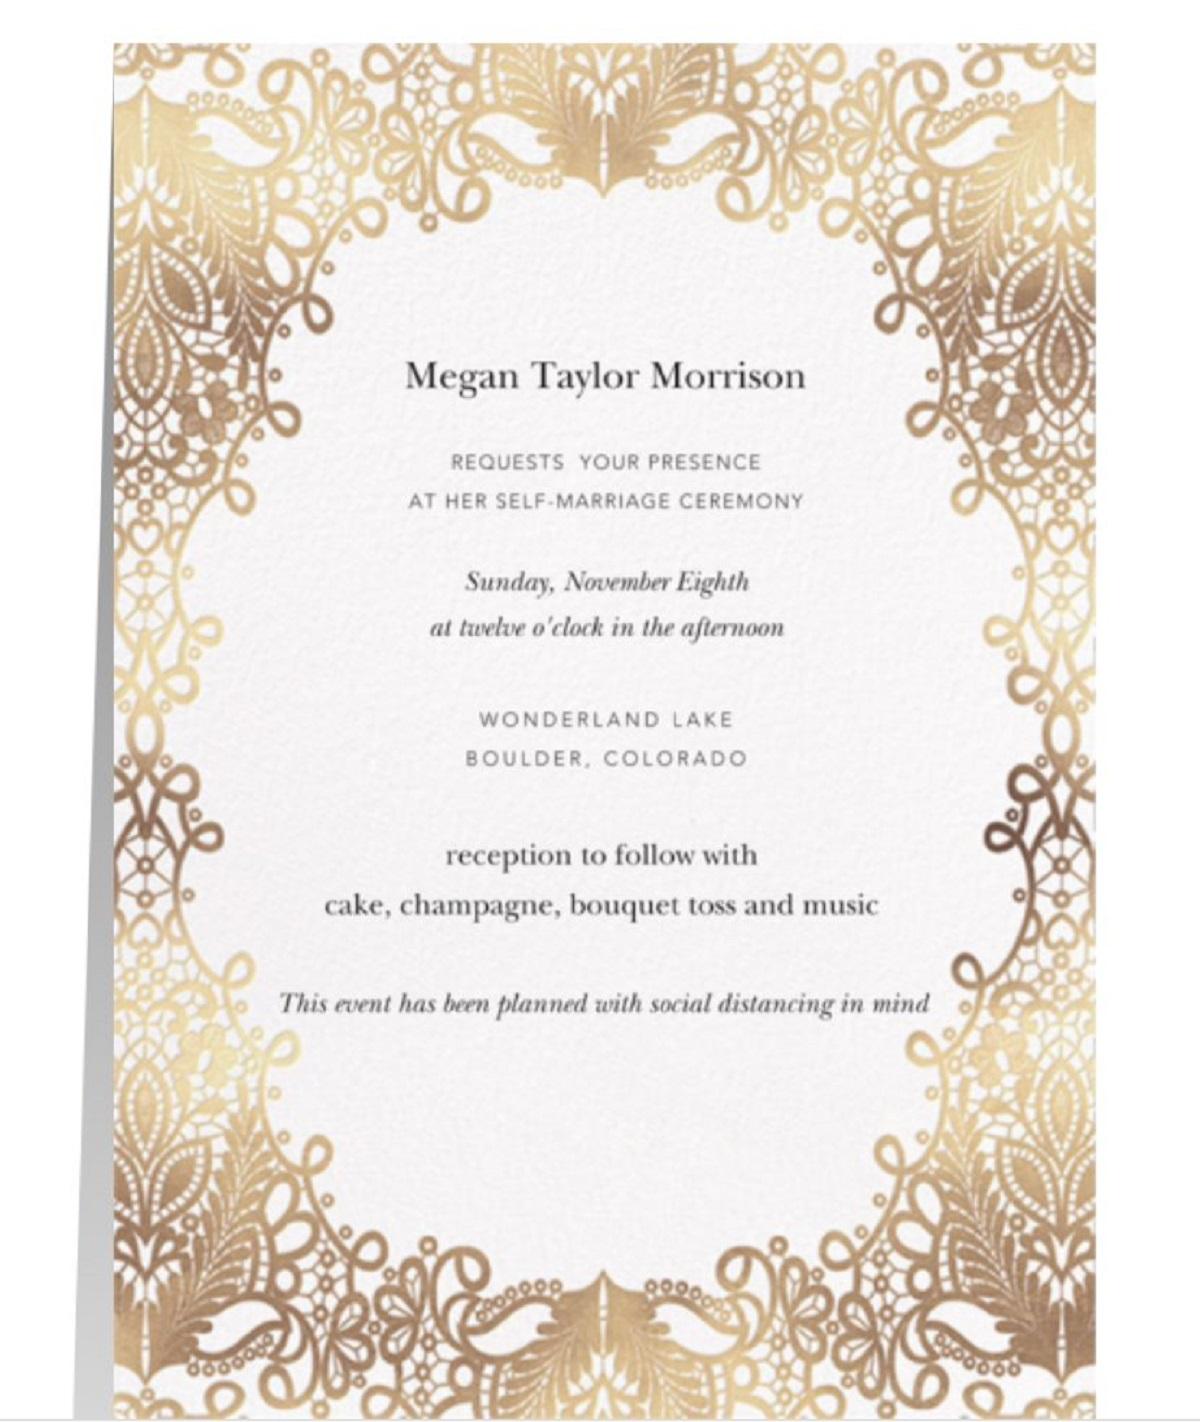 Invitaţia de nuntă la ceremonia lui Meg